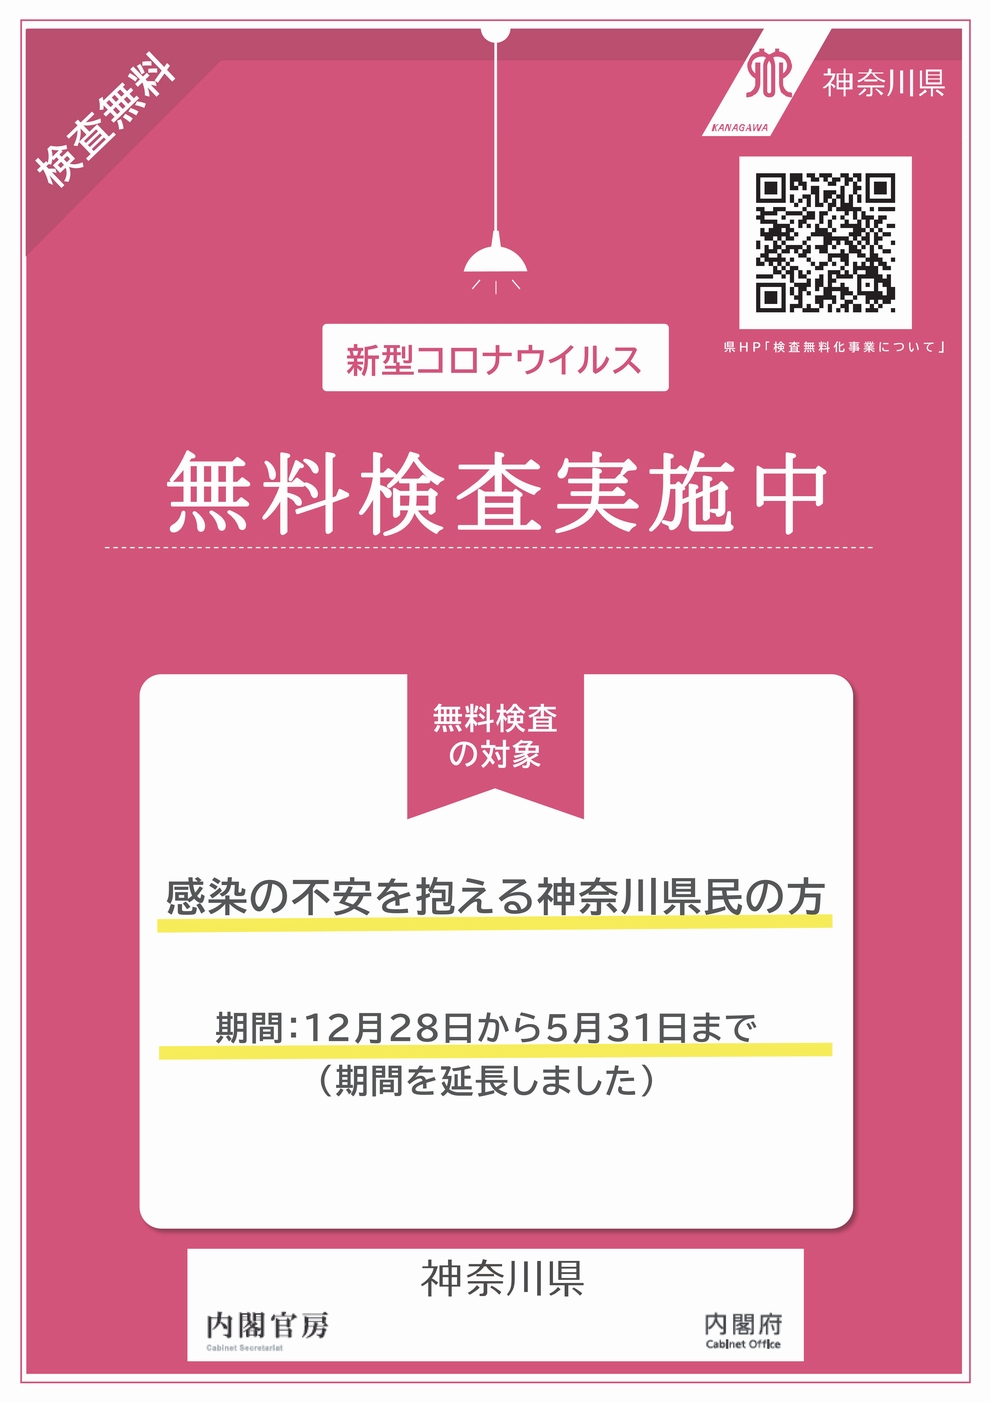 神奈川県無料PCR検査について（4/23 更新）